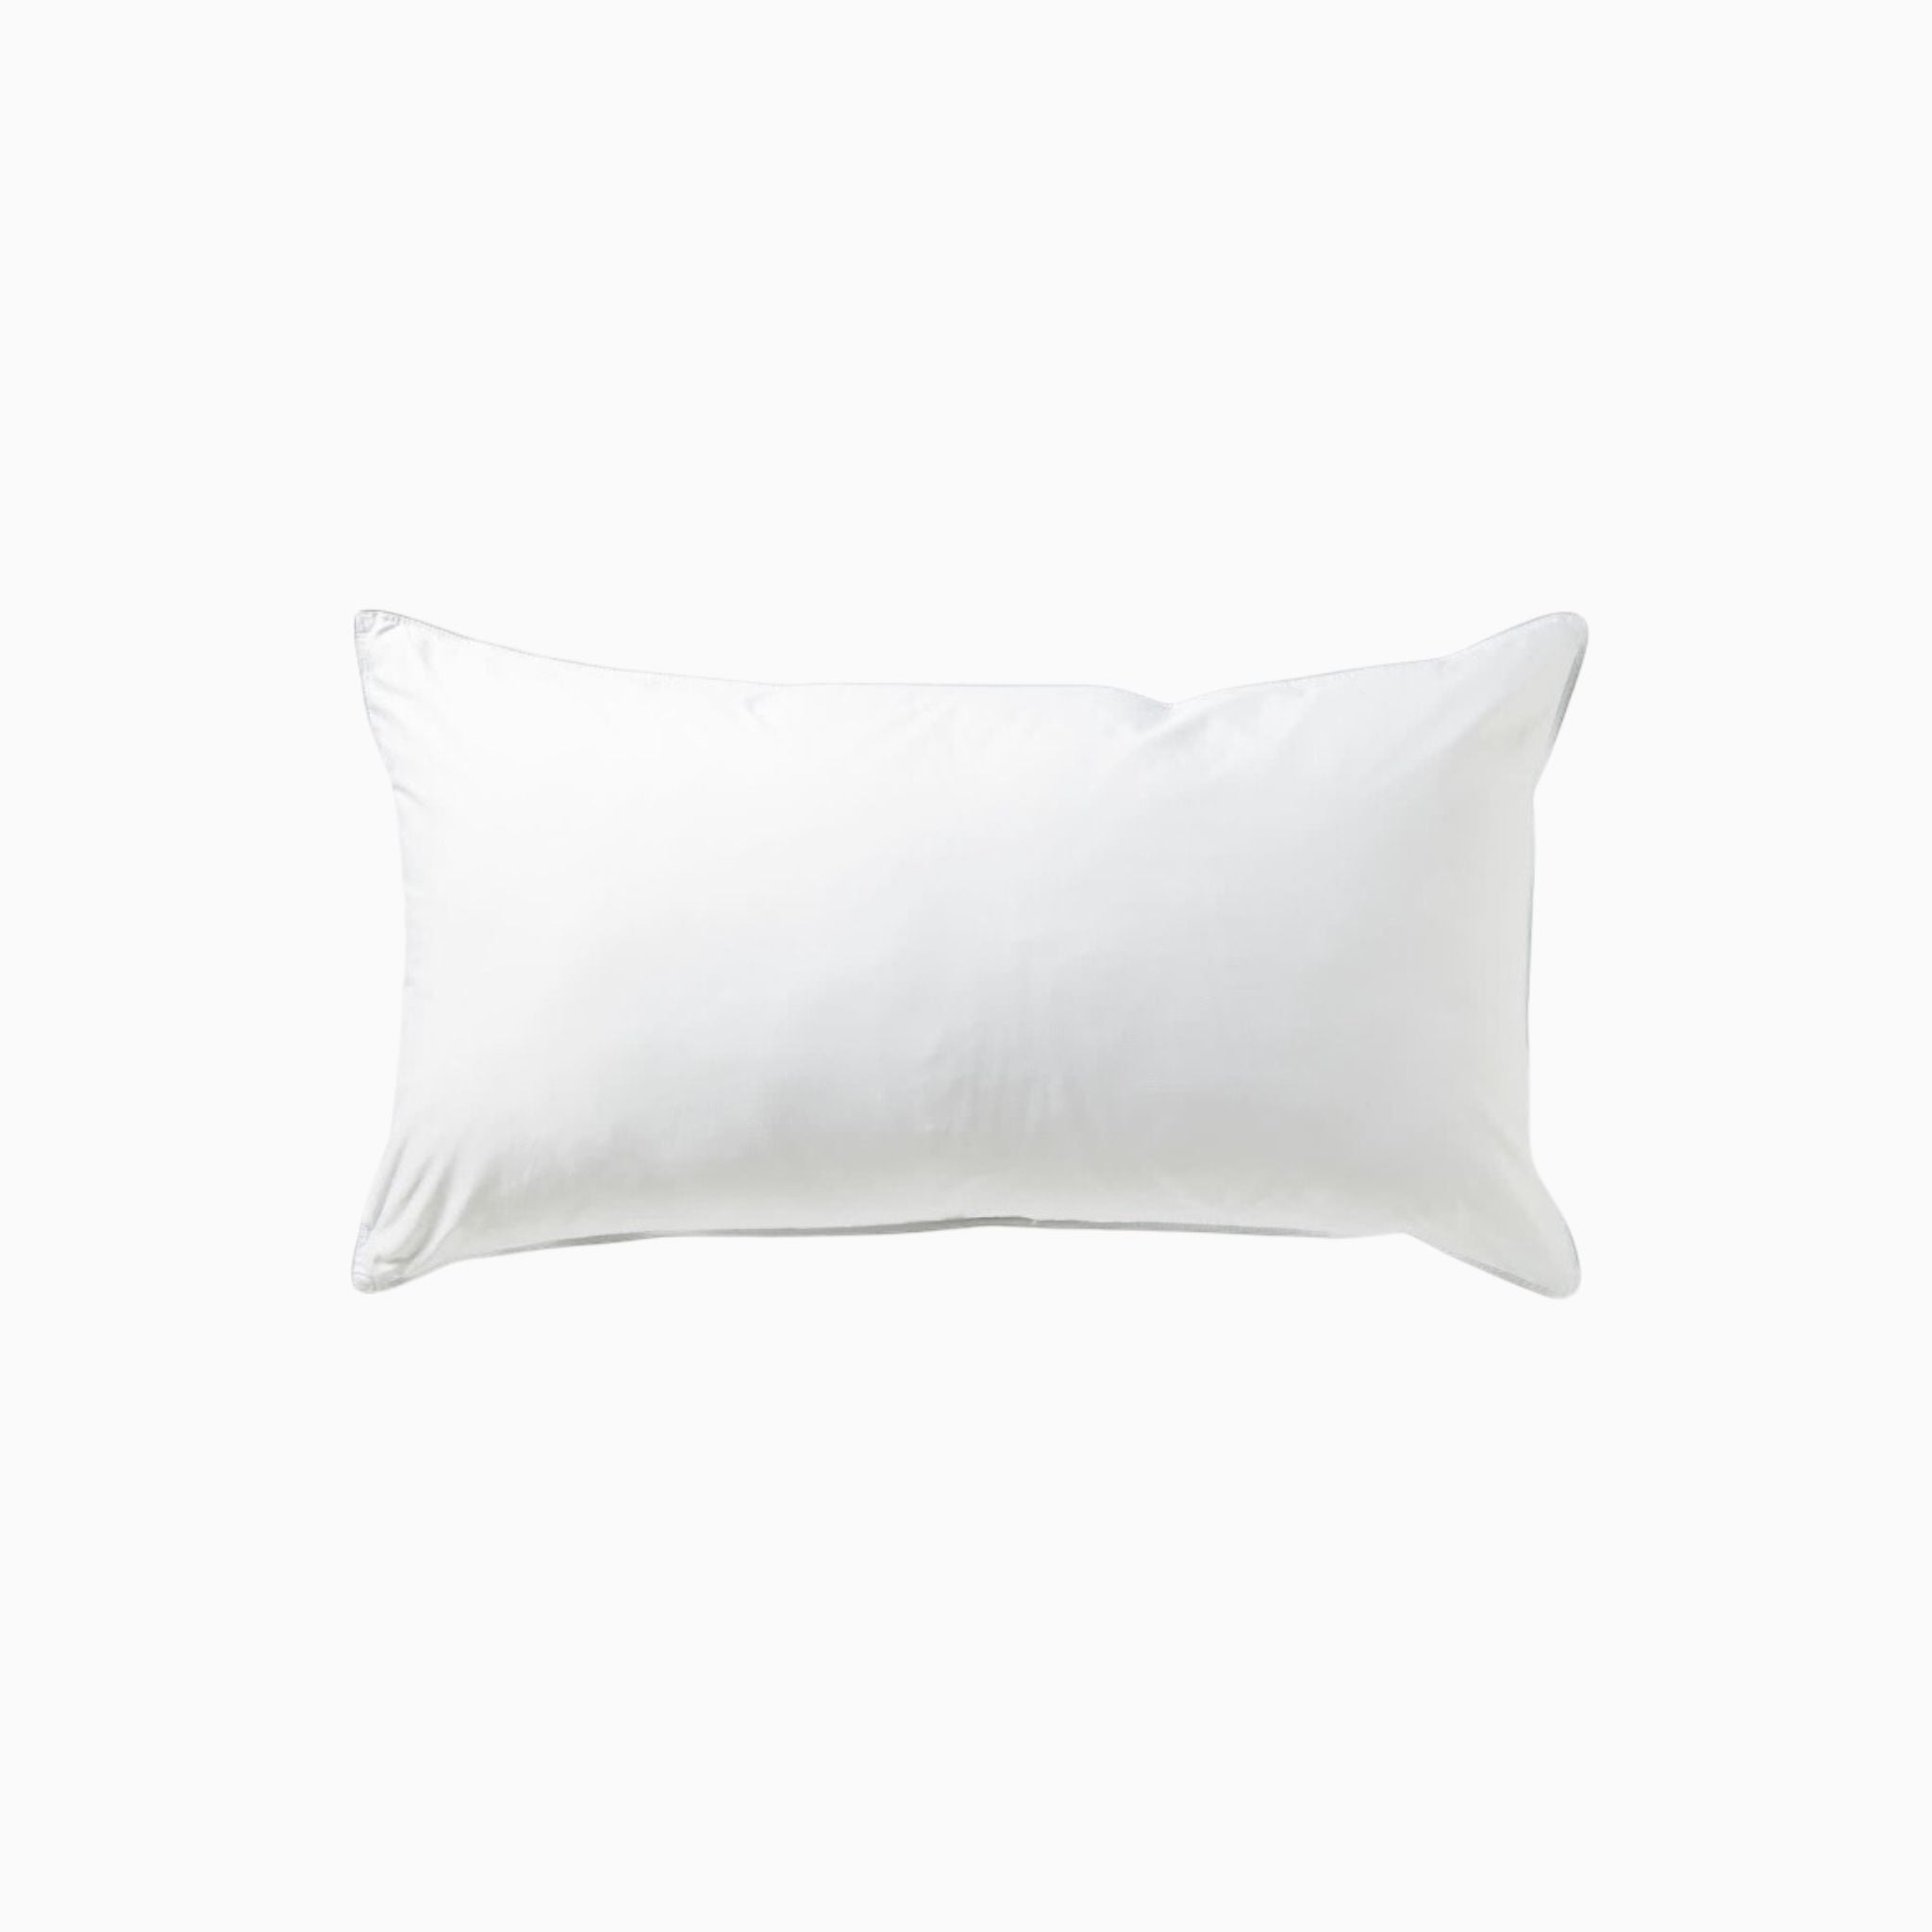 Pillow Insert 18x25